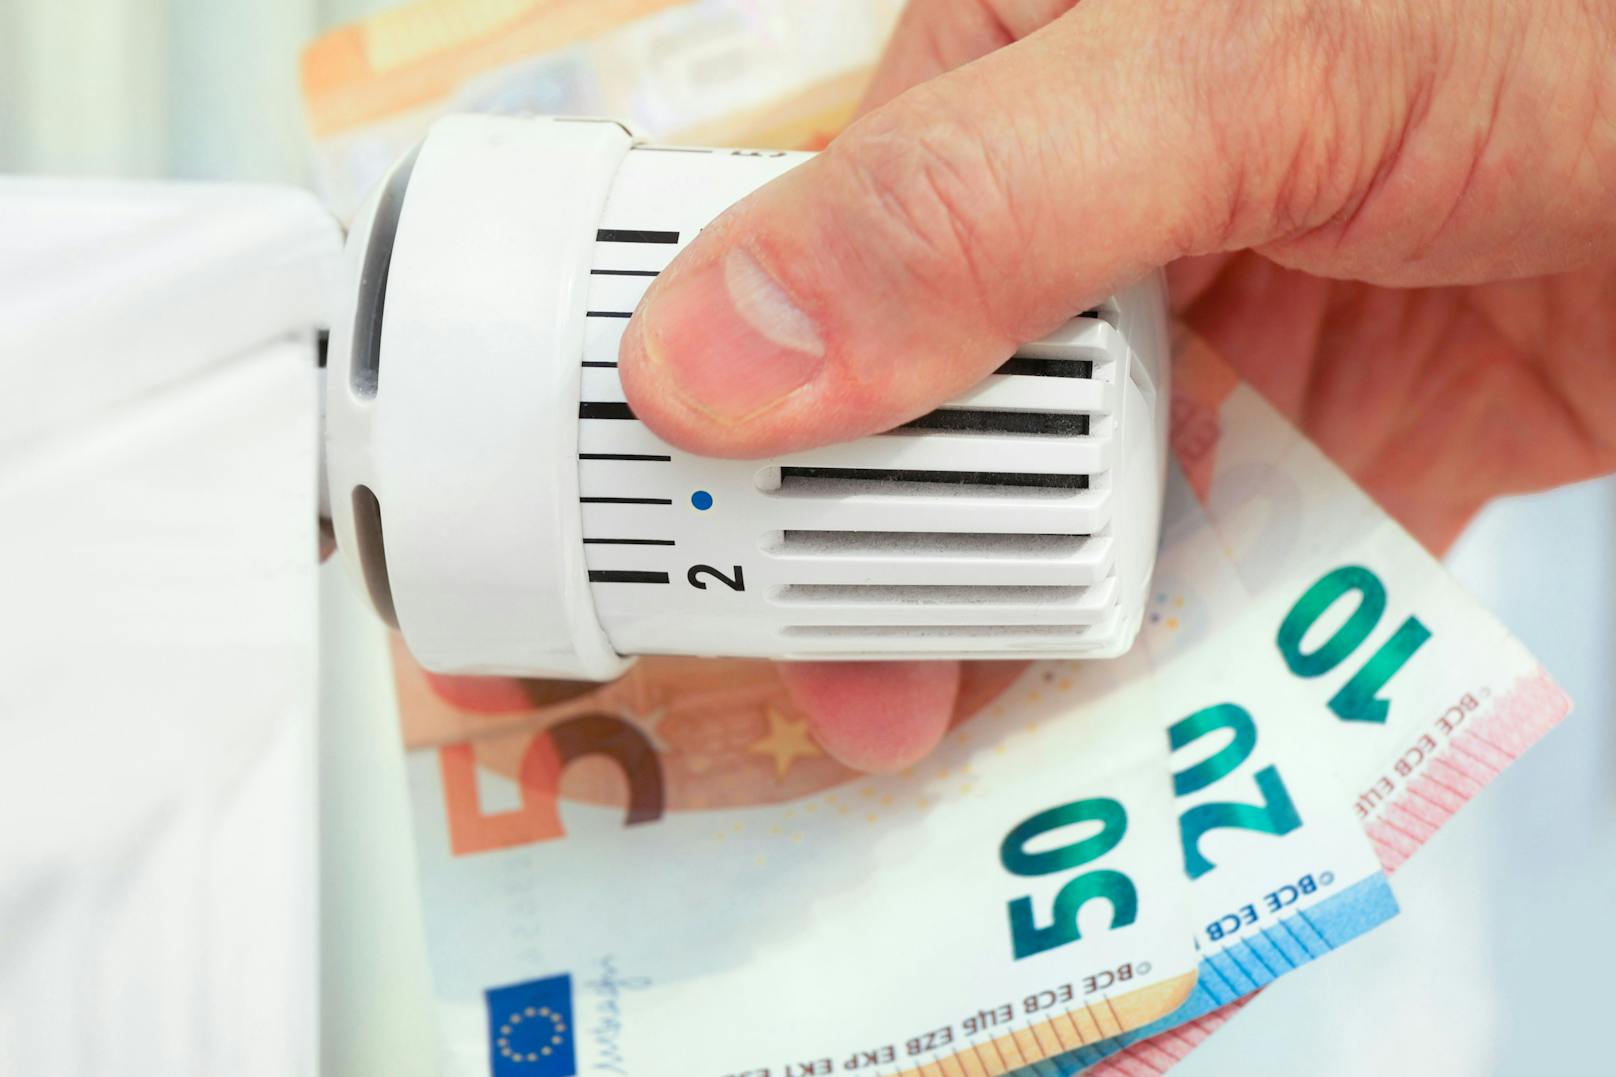 Strom-Firma will über 42.500 € Nachzahlung von Wiener